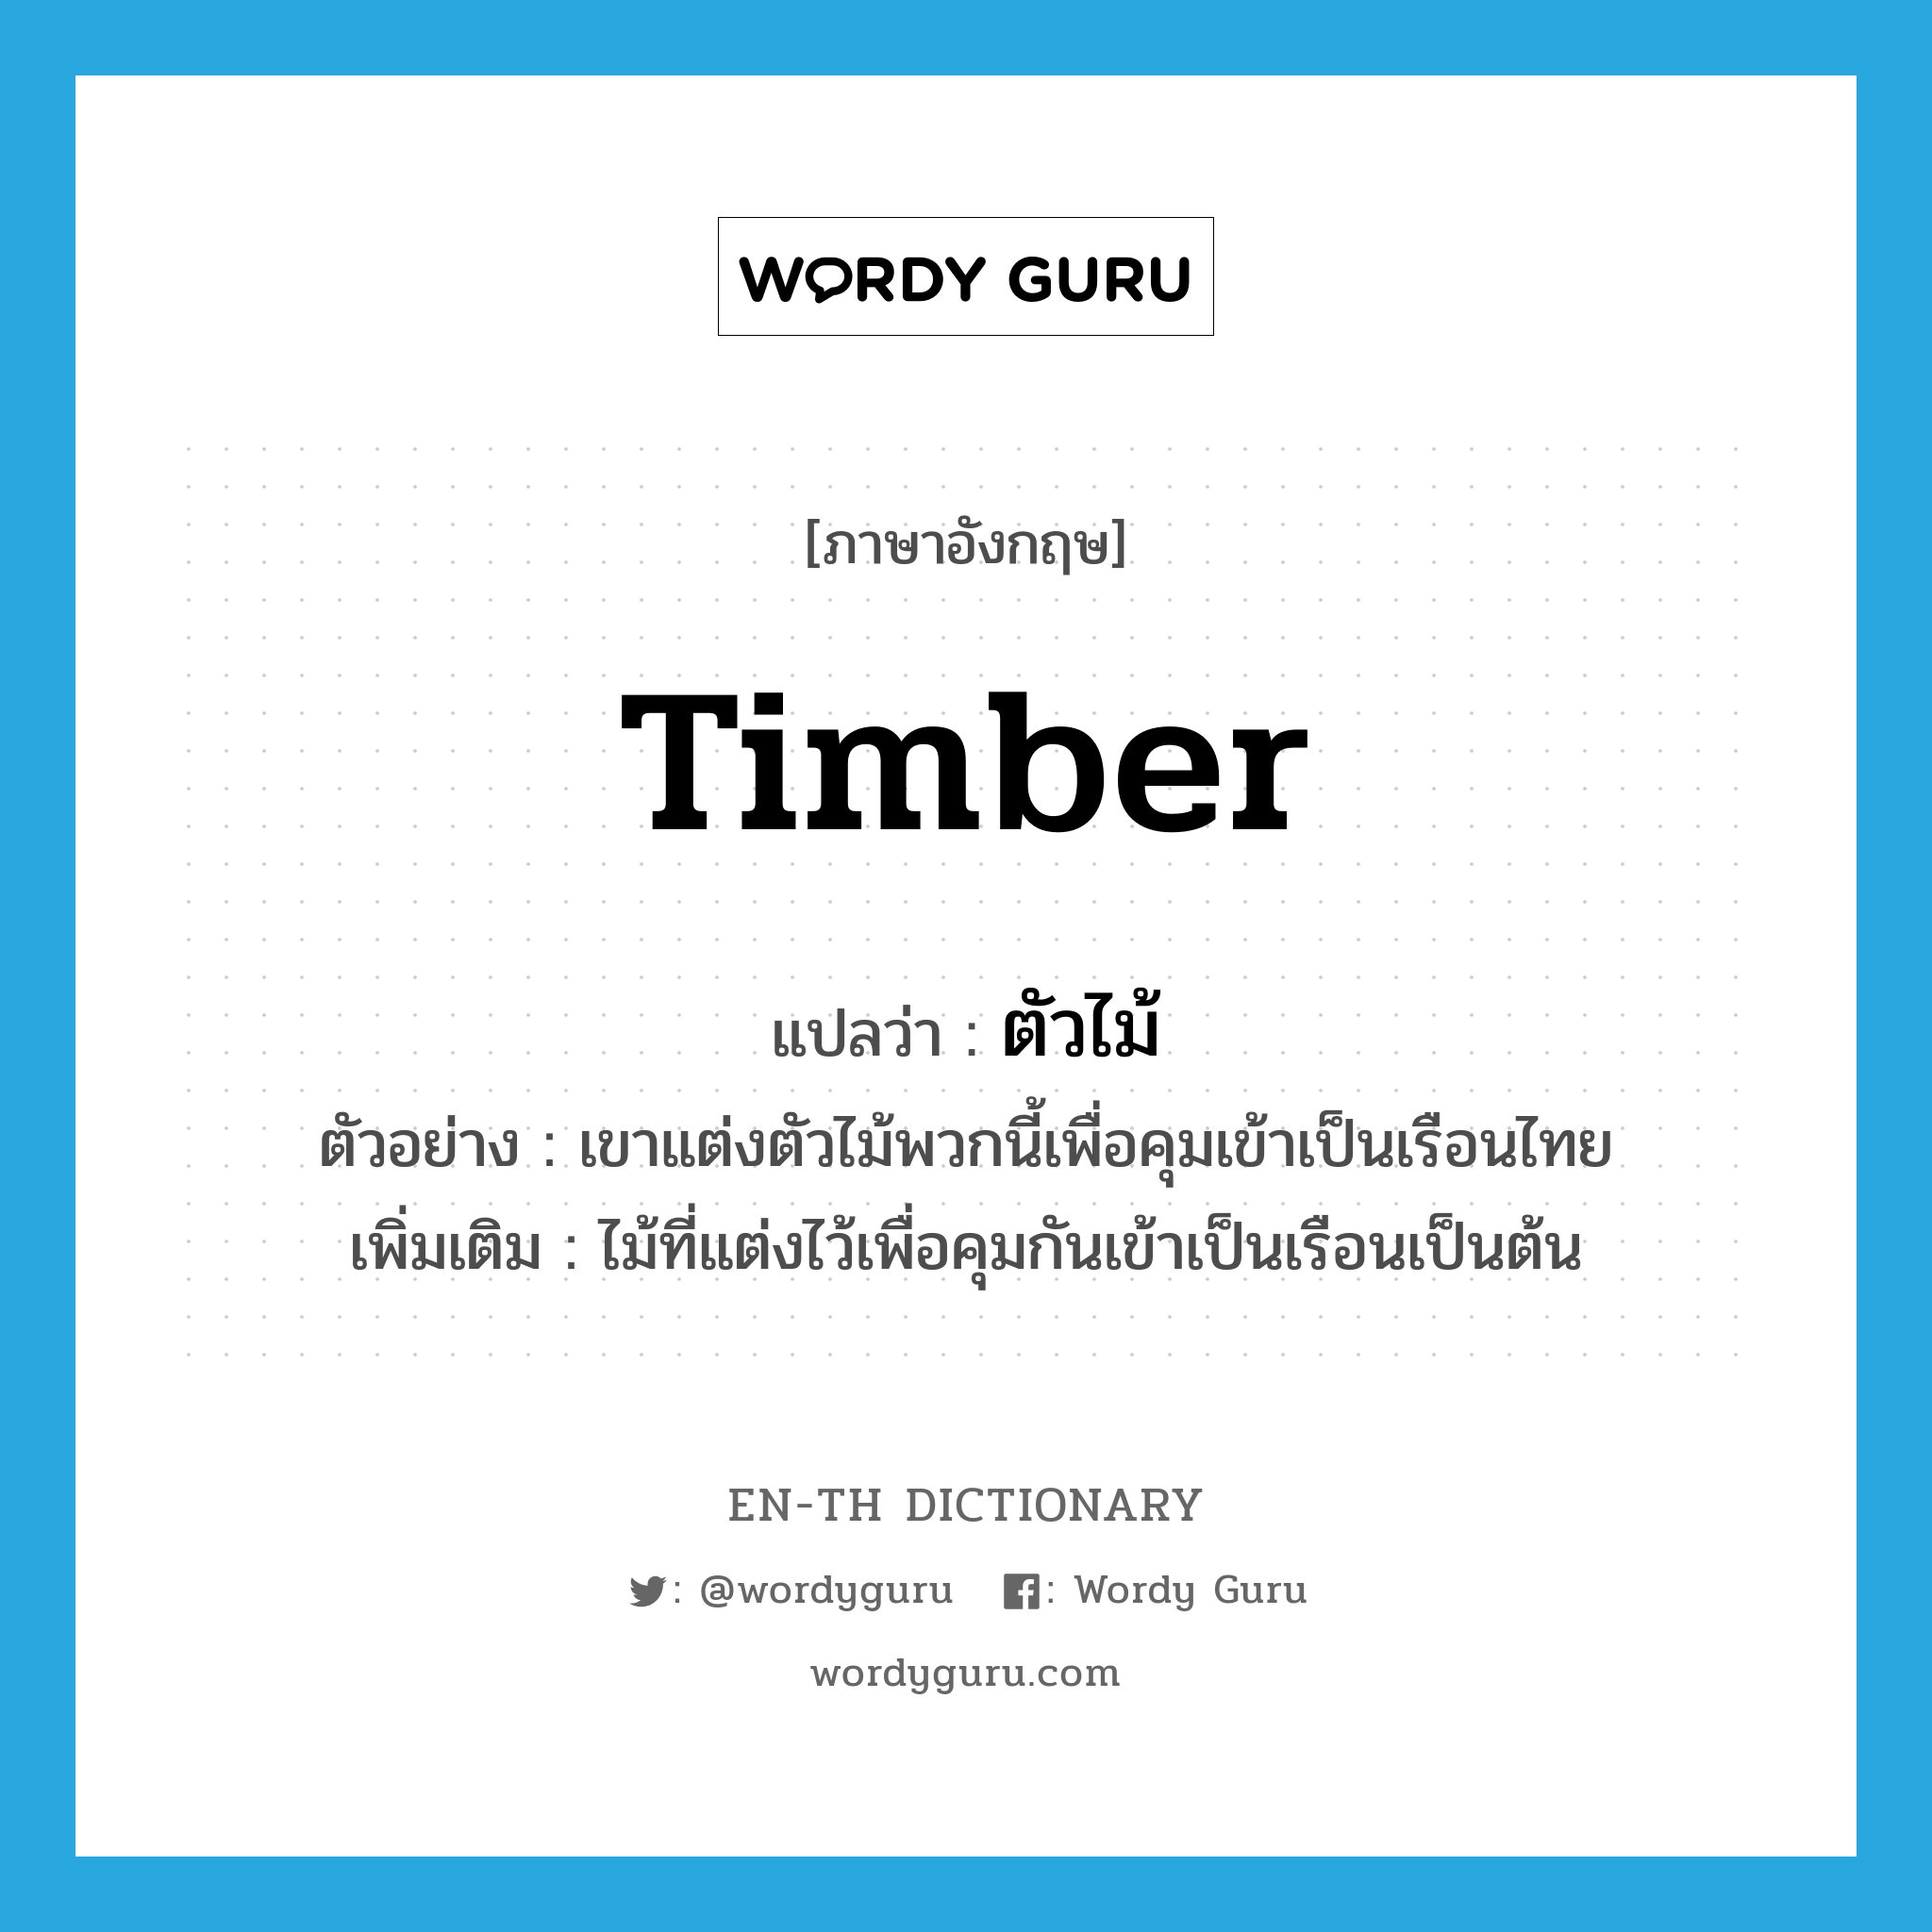 ตัวไม้ ภาษาอังกฤษ?, คำศัพท์ภาษาอังกฤษ ตัวไม้ แปลว่า timber ประเภท N ตัวอย่าง เขาแต่งตัวไม้พวกนี้เพื่อคุมเข้าเป็นเรือนไทย เพิ่มเติม ไม้ที่แต่งไว้เพื่อคุมกันเข้าเป็นเรือนเป็นต้น หมวด N